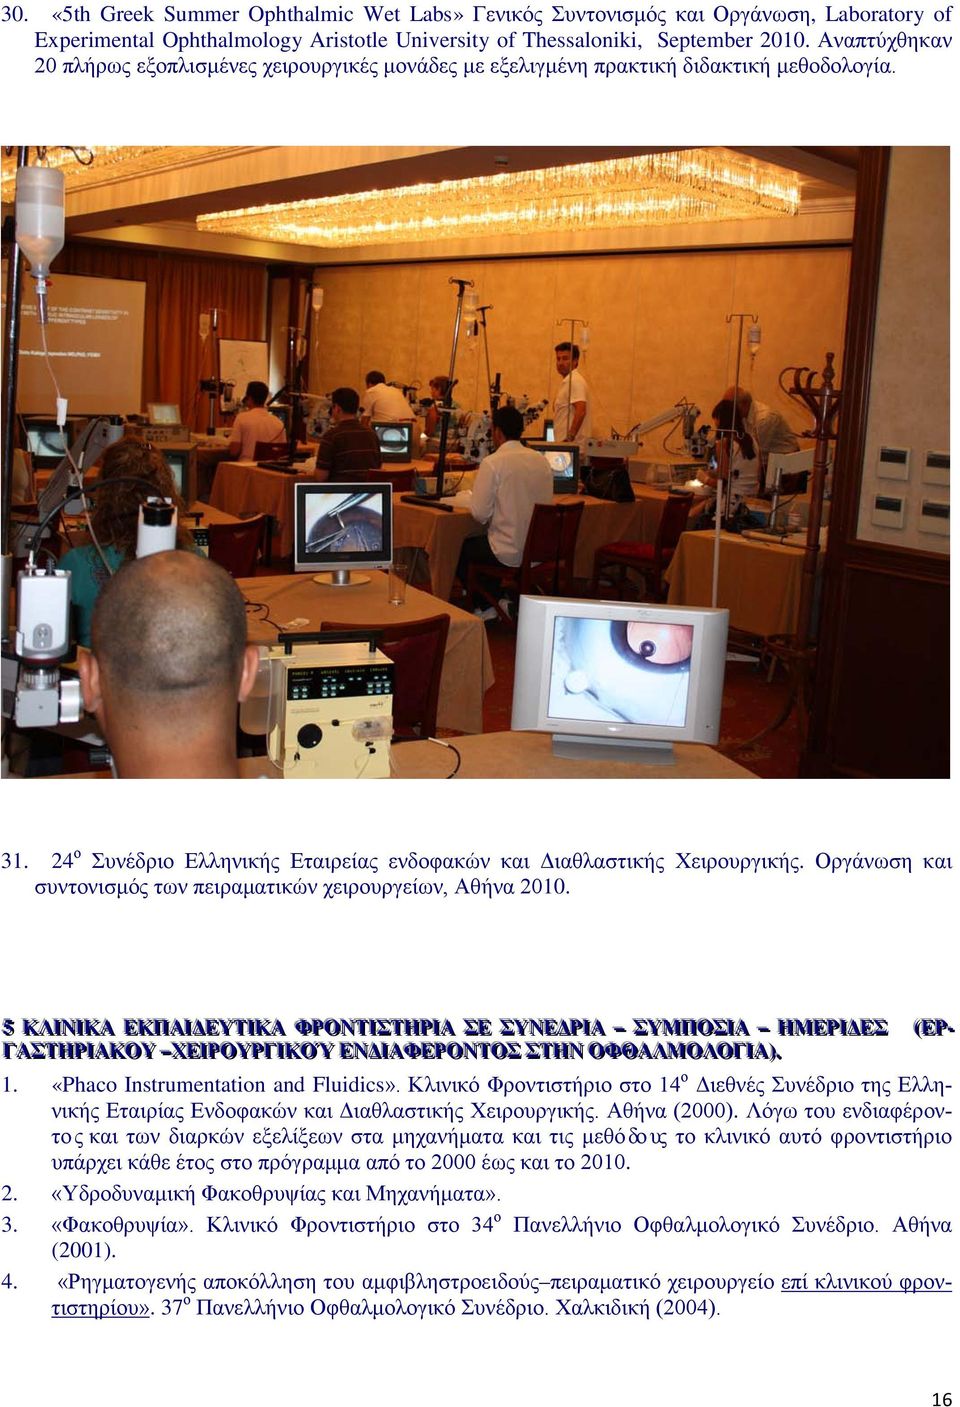 Οργάνωση και συντονισμός των πειραματικών χειρουργείων, Αθήνα 2010.